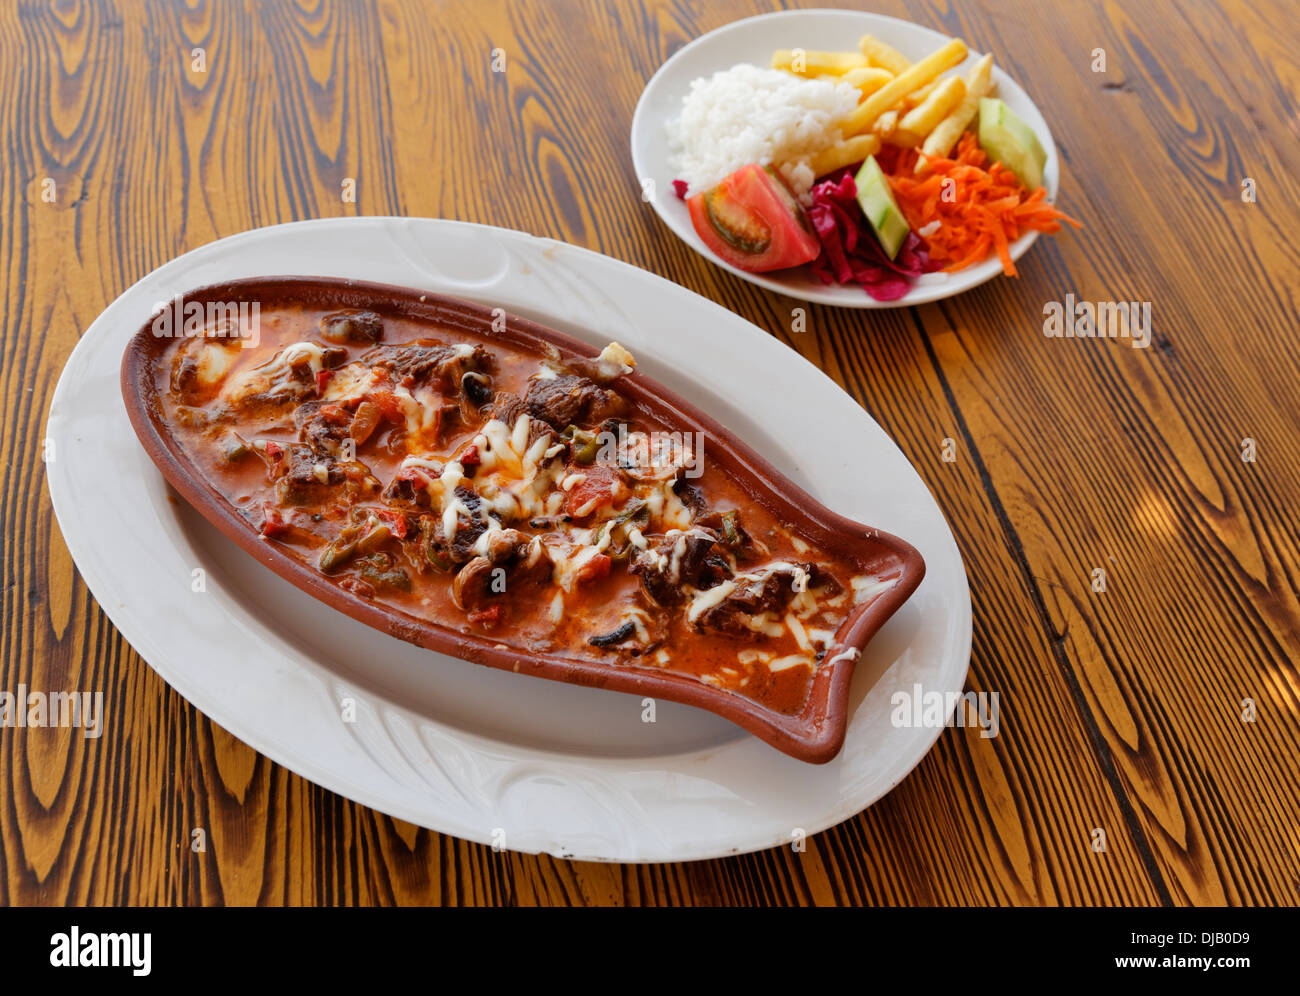 Kebap dans le plat de cuisson, et de la salade, Turquie Banque D'Images